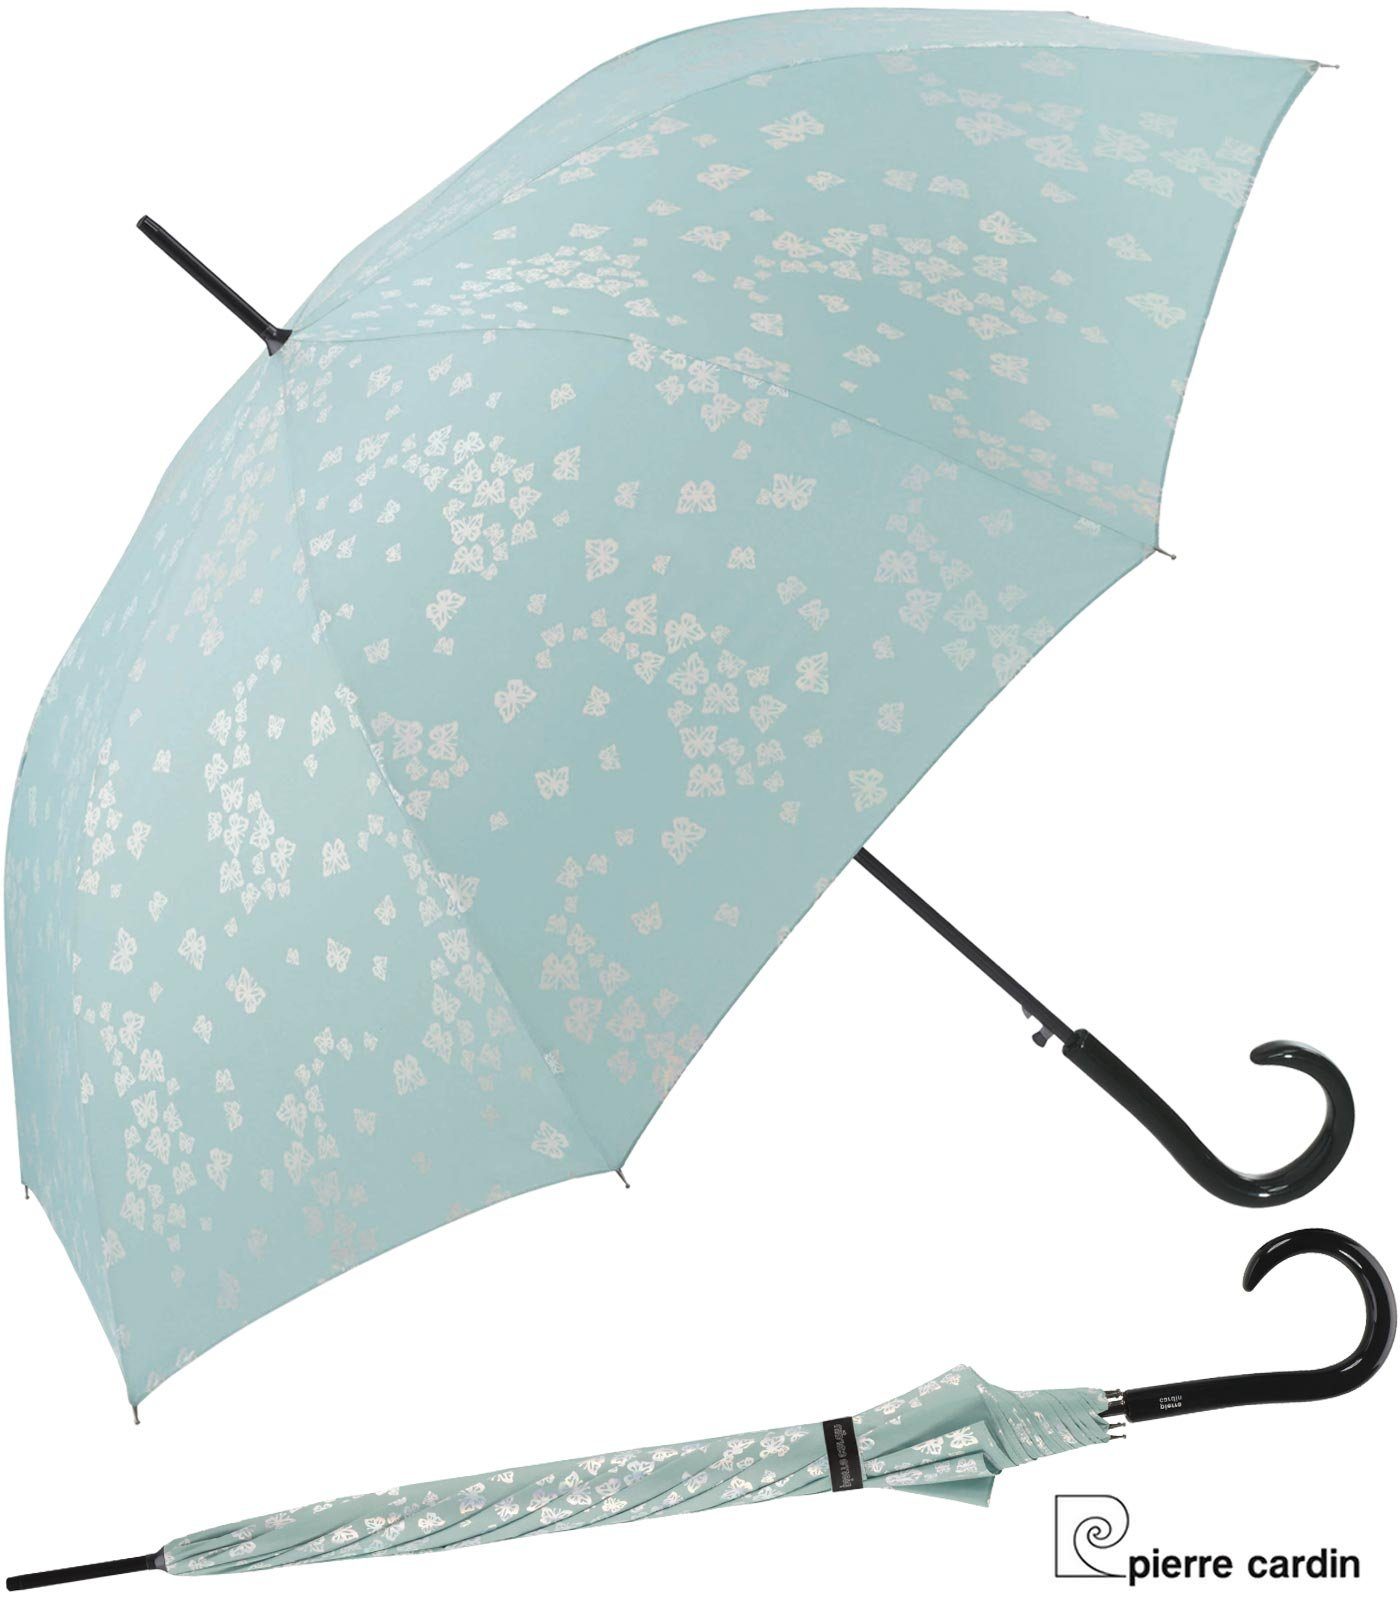 Pierre Cardin Langregenschirm mit Auf-Automatik Schmertterlinge türkis-silber, auffallend und wunderschön